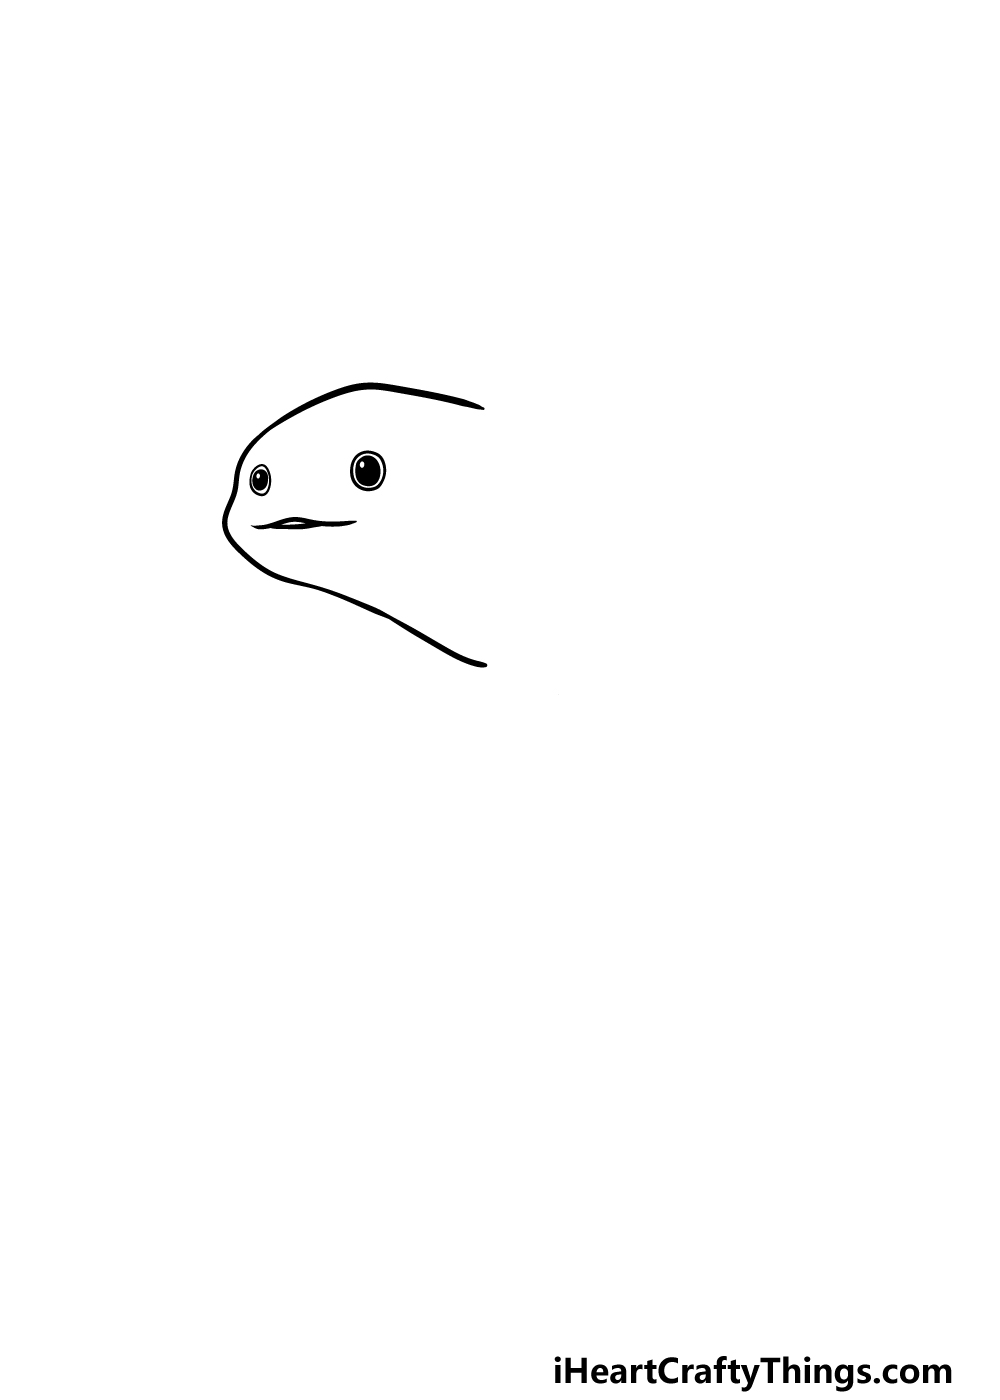 Drawing Axolotl step 1